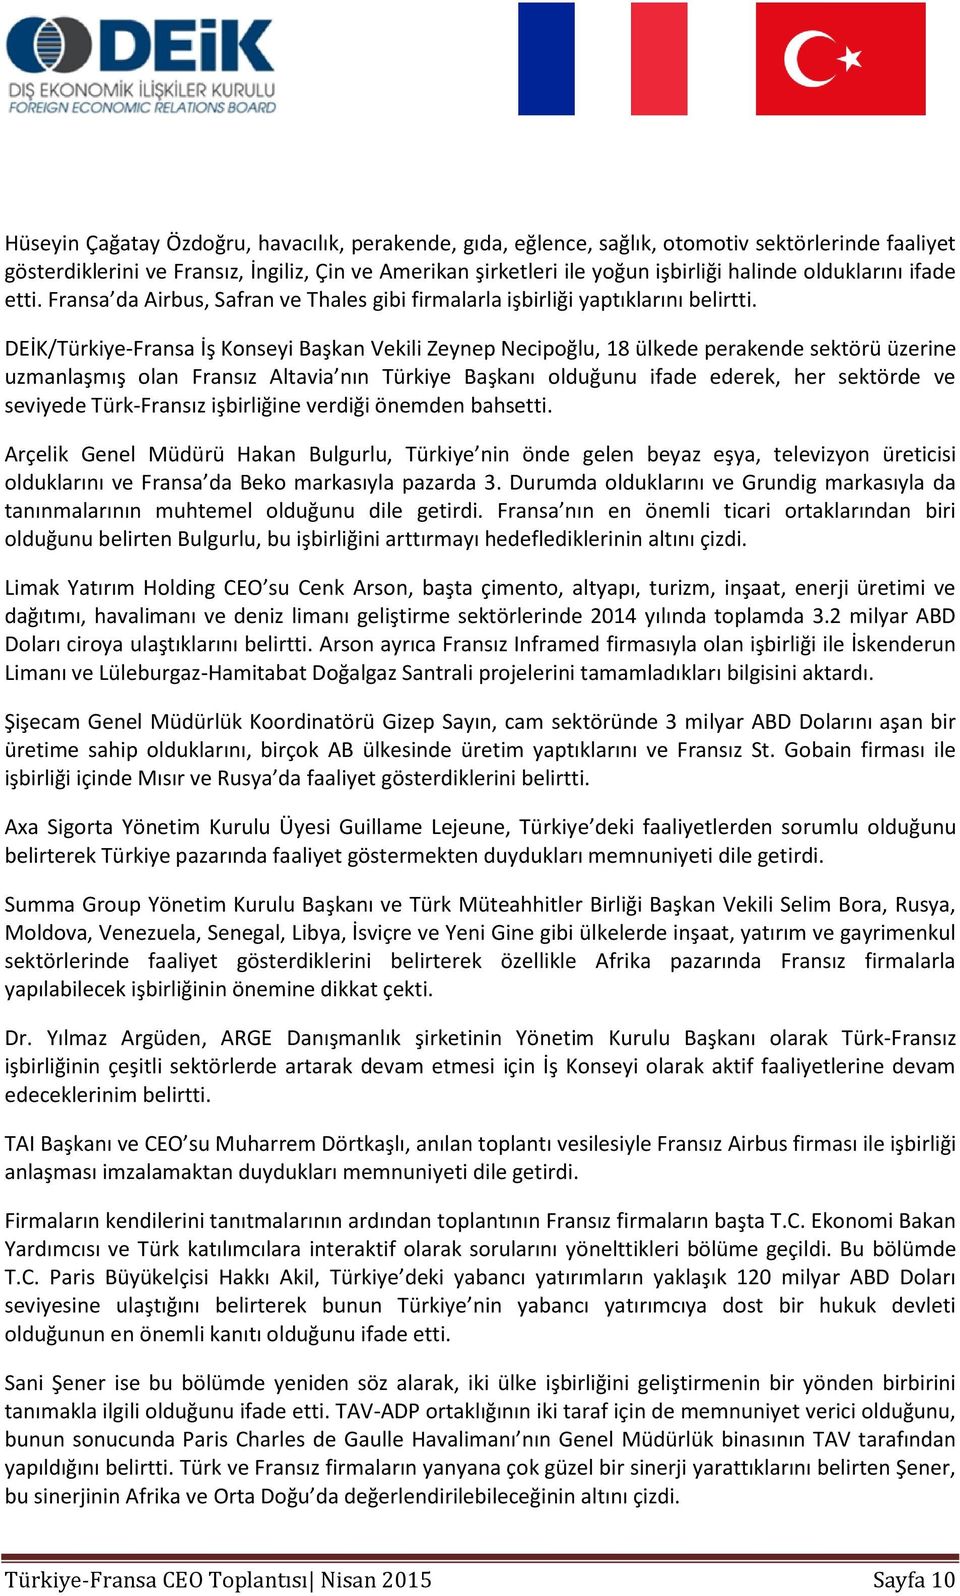 DEİK/Türkiye-Fransa İş Konseyi Başkan Vekili Zeynep Necipoğlu, 18 ülkede perakende sektörü üzerine uzmanlaşmış olan Fransız Altavia nın Türkiye Başkanı olduğunu ifade ederek, her sektörde ve seviyede